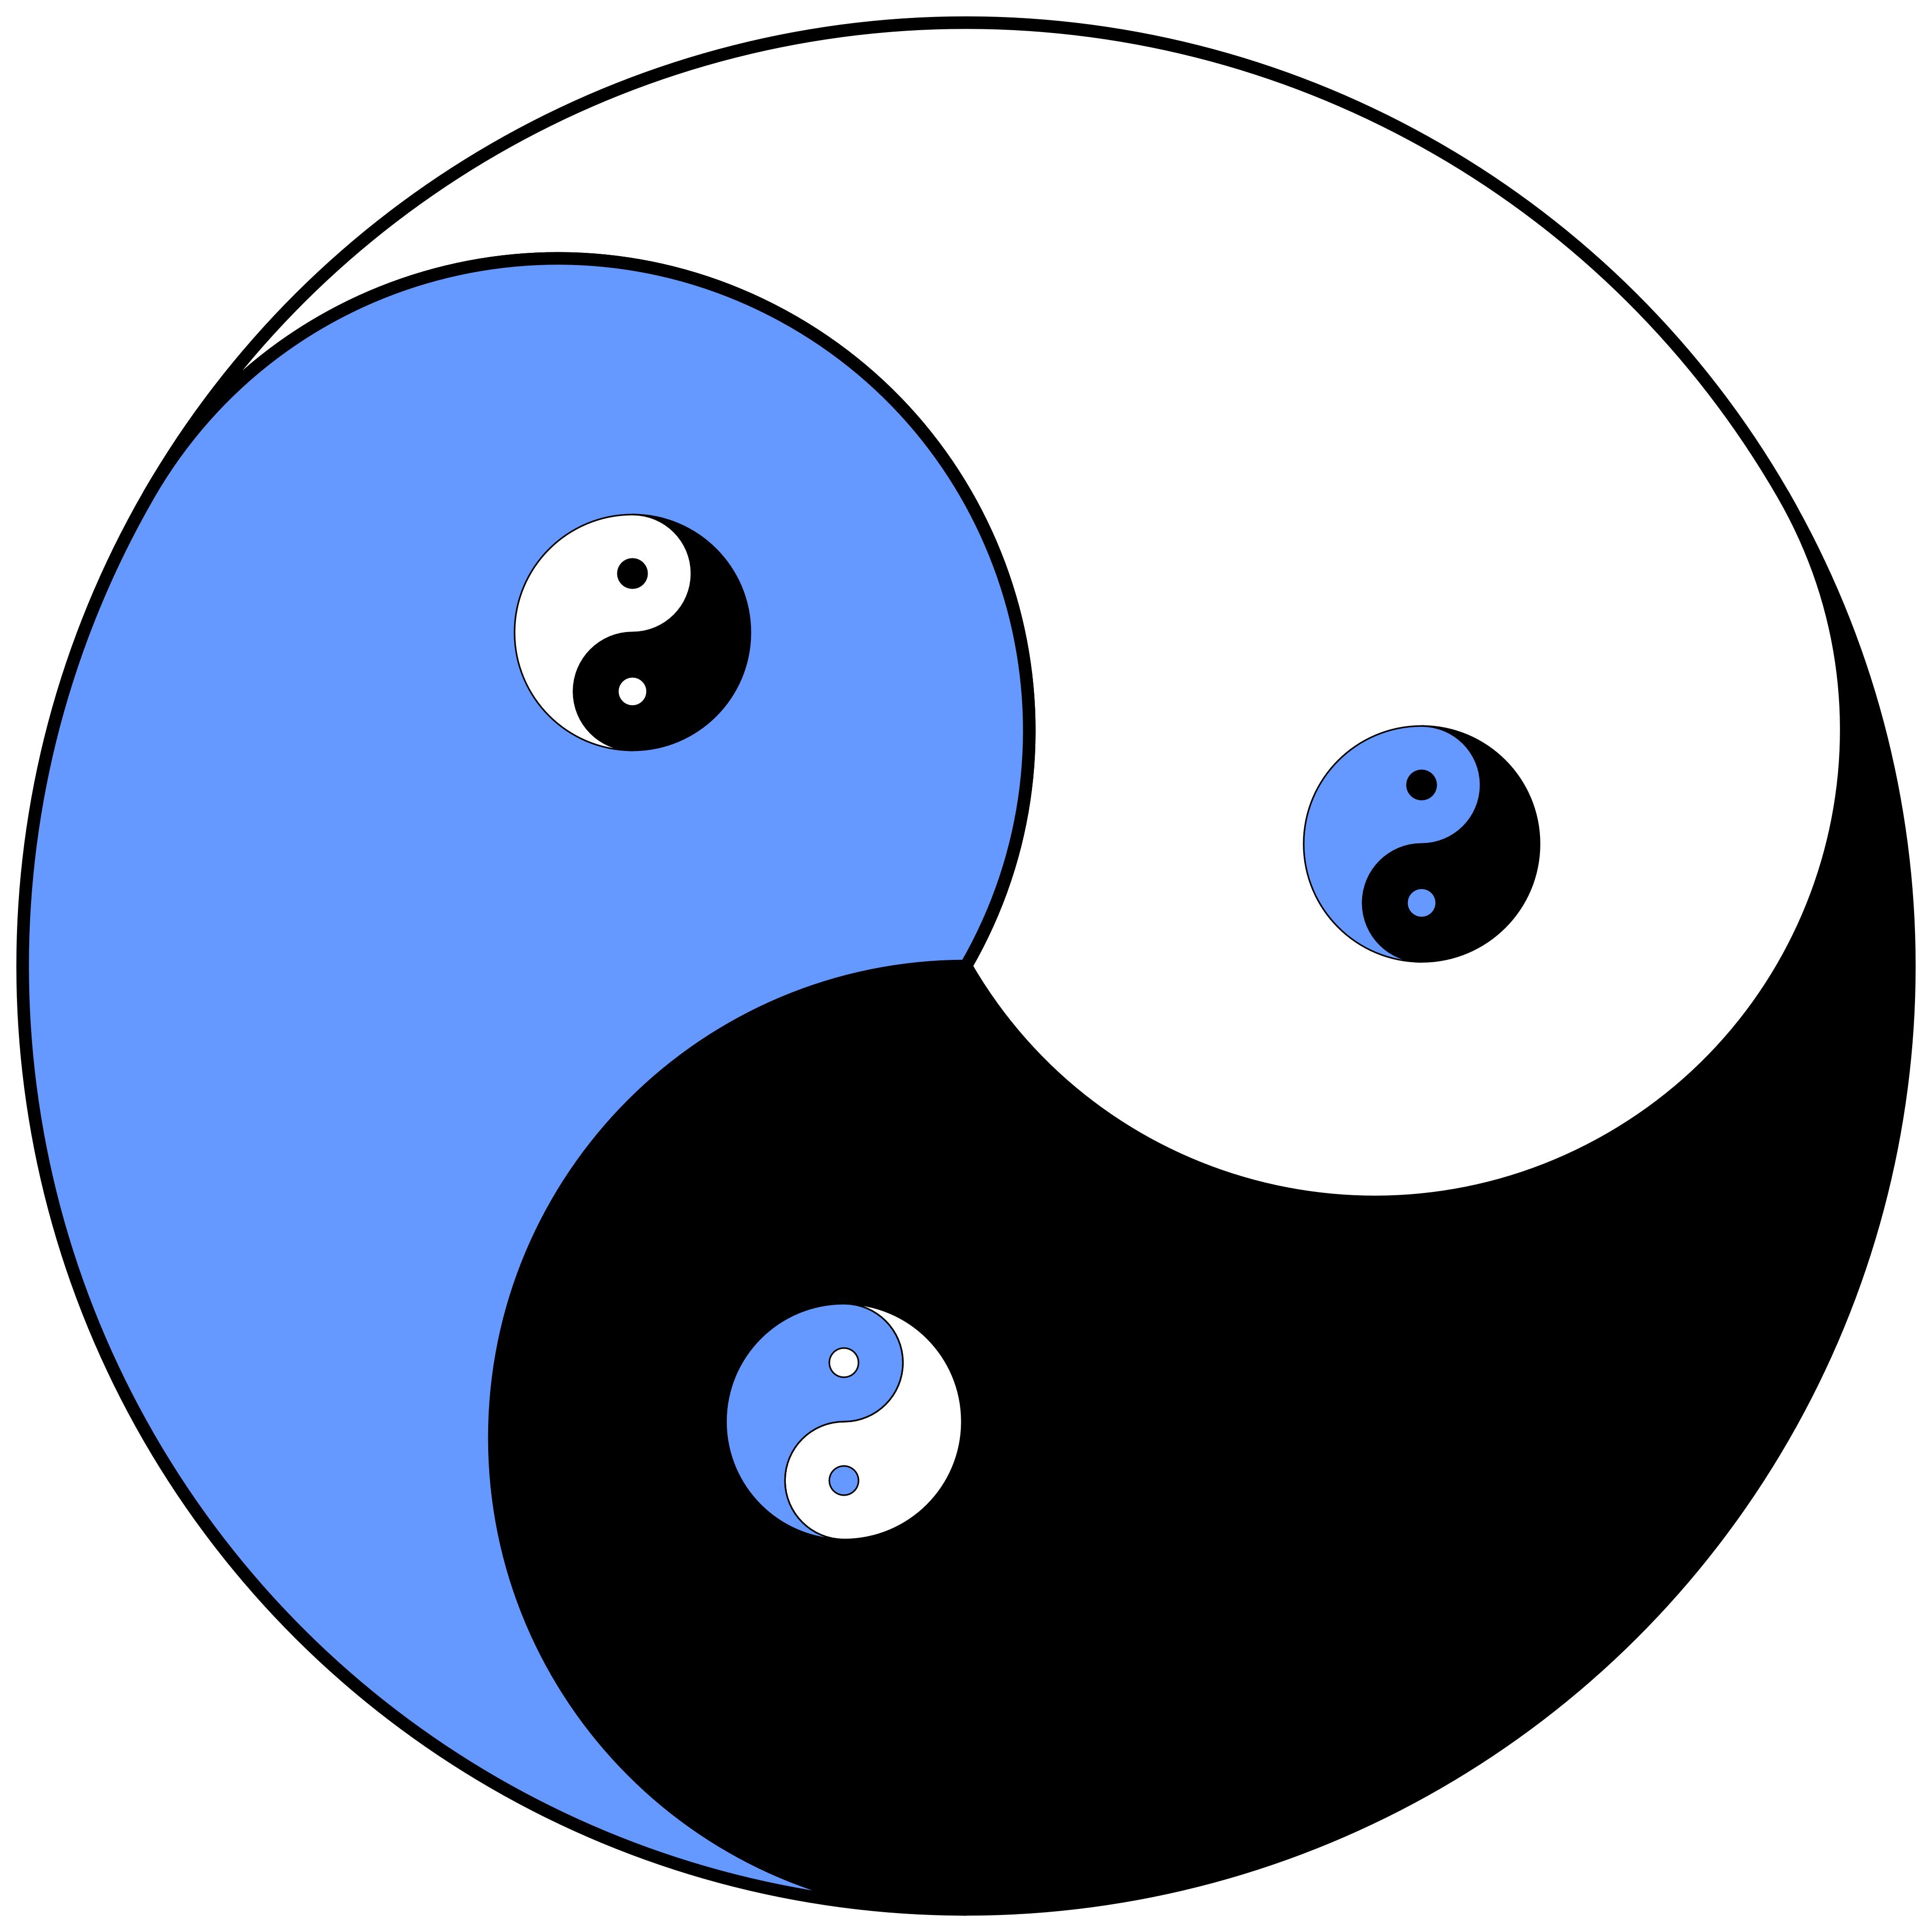 Yin and yang. Символ китайской философии Инь-Янь.